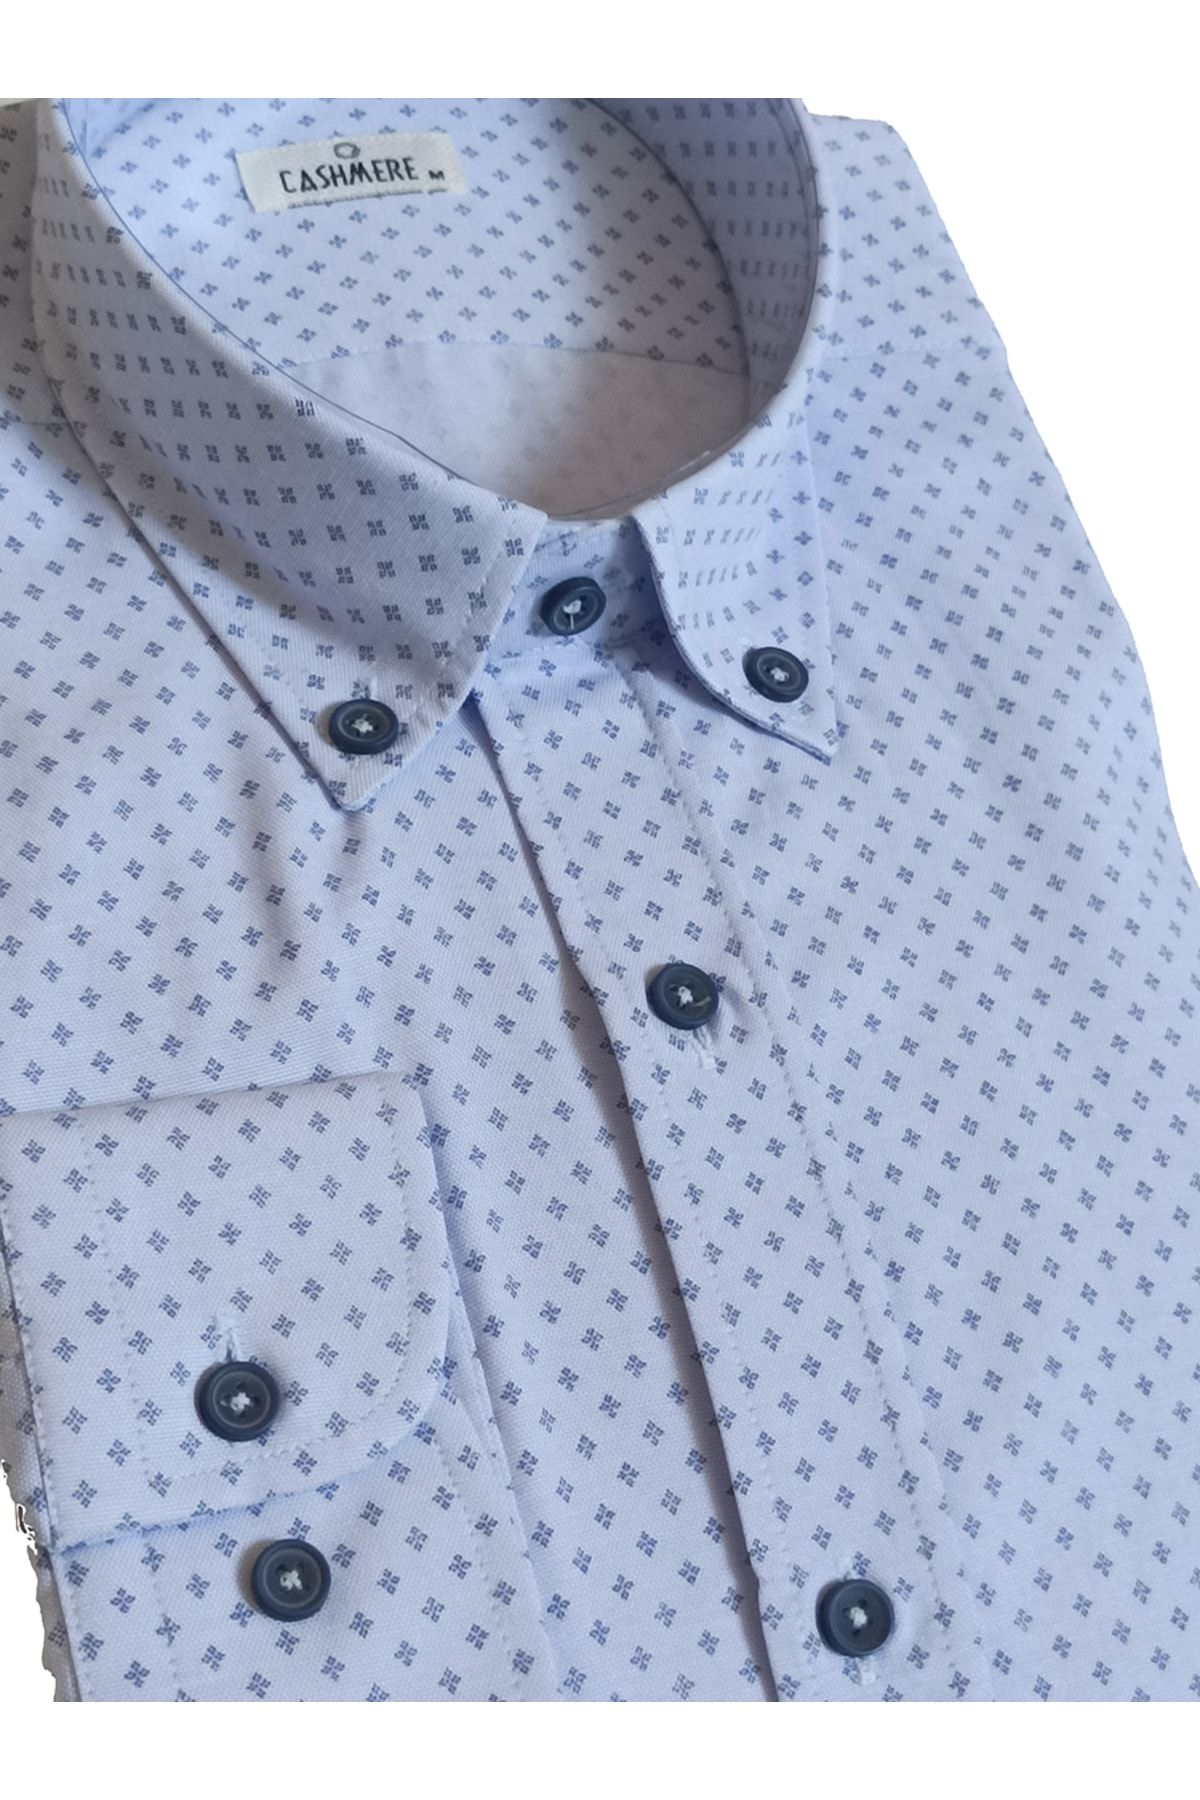 Cashmere Cotton Baskılı Düğmeli Yaka Slim Fit Erkek Gömlek